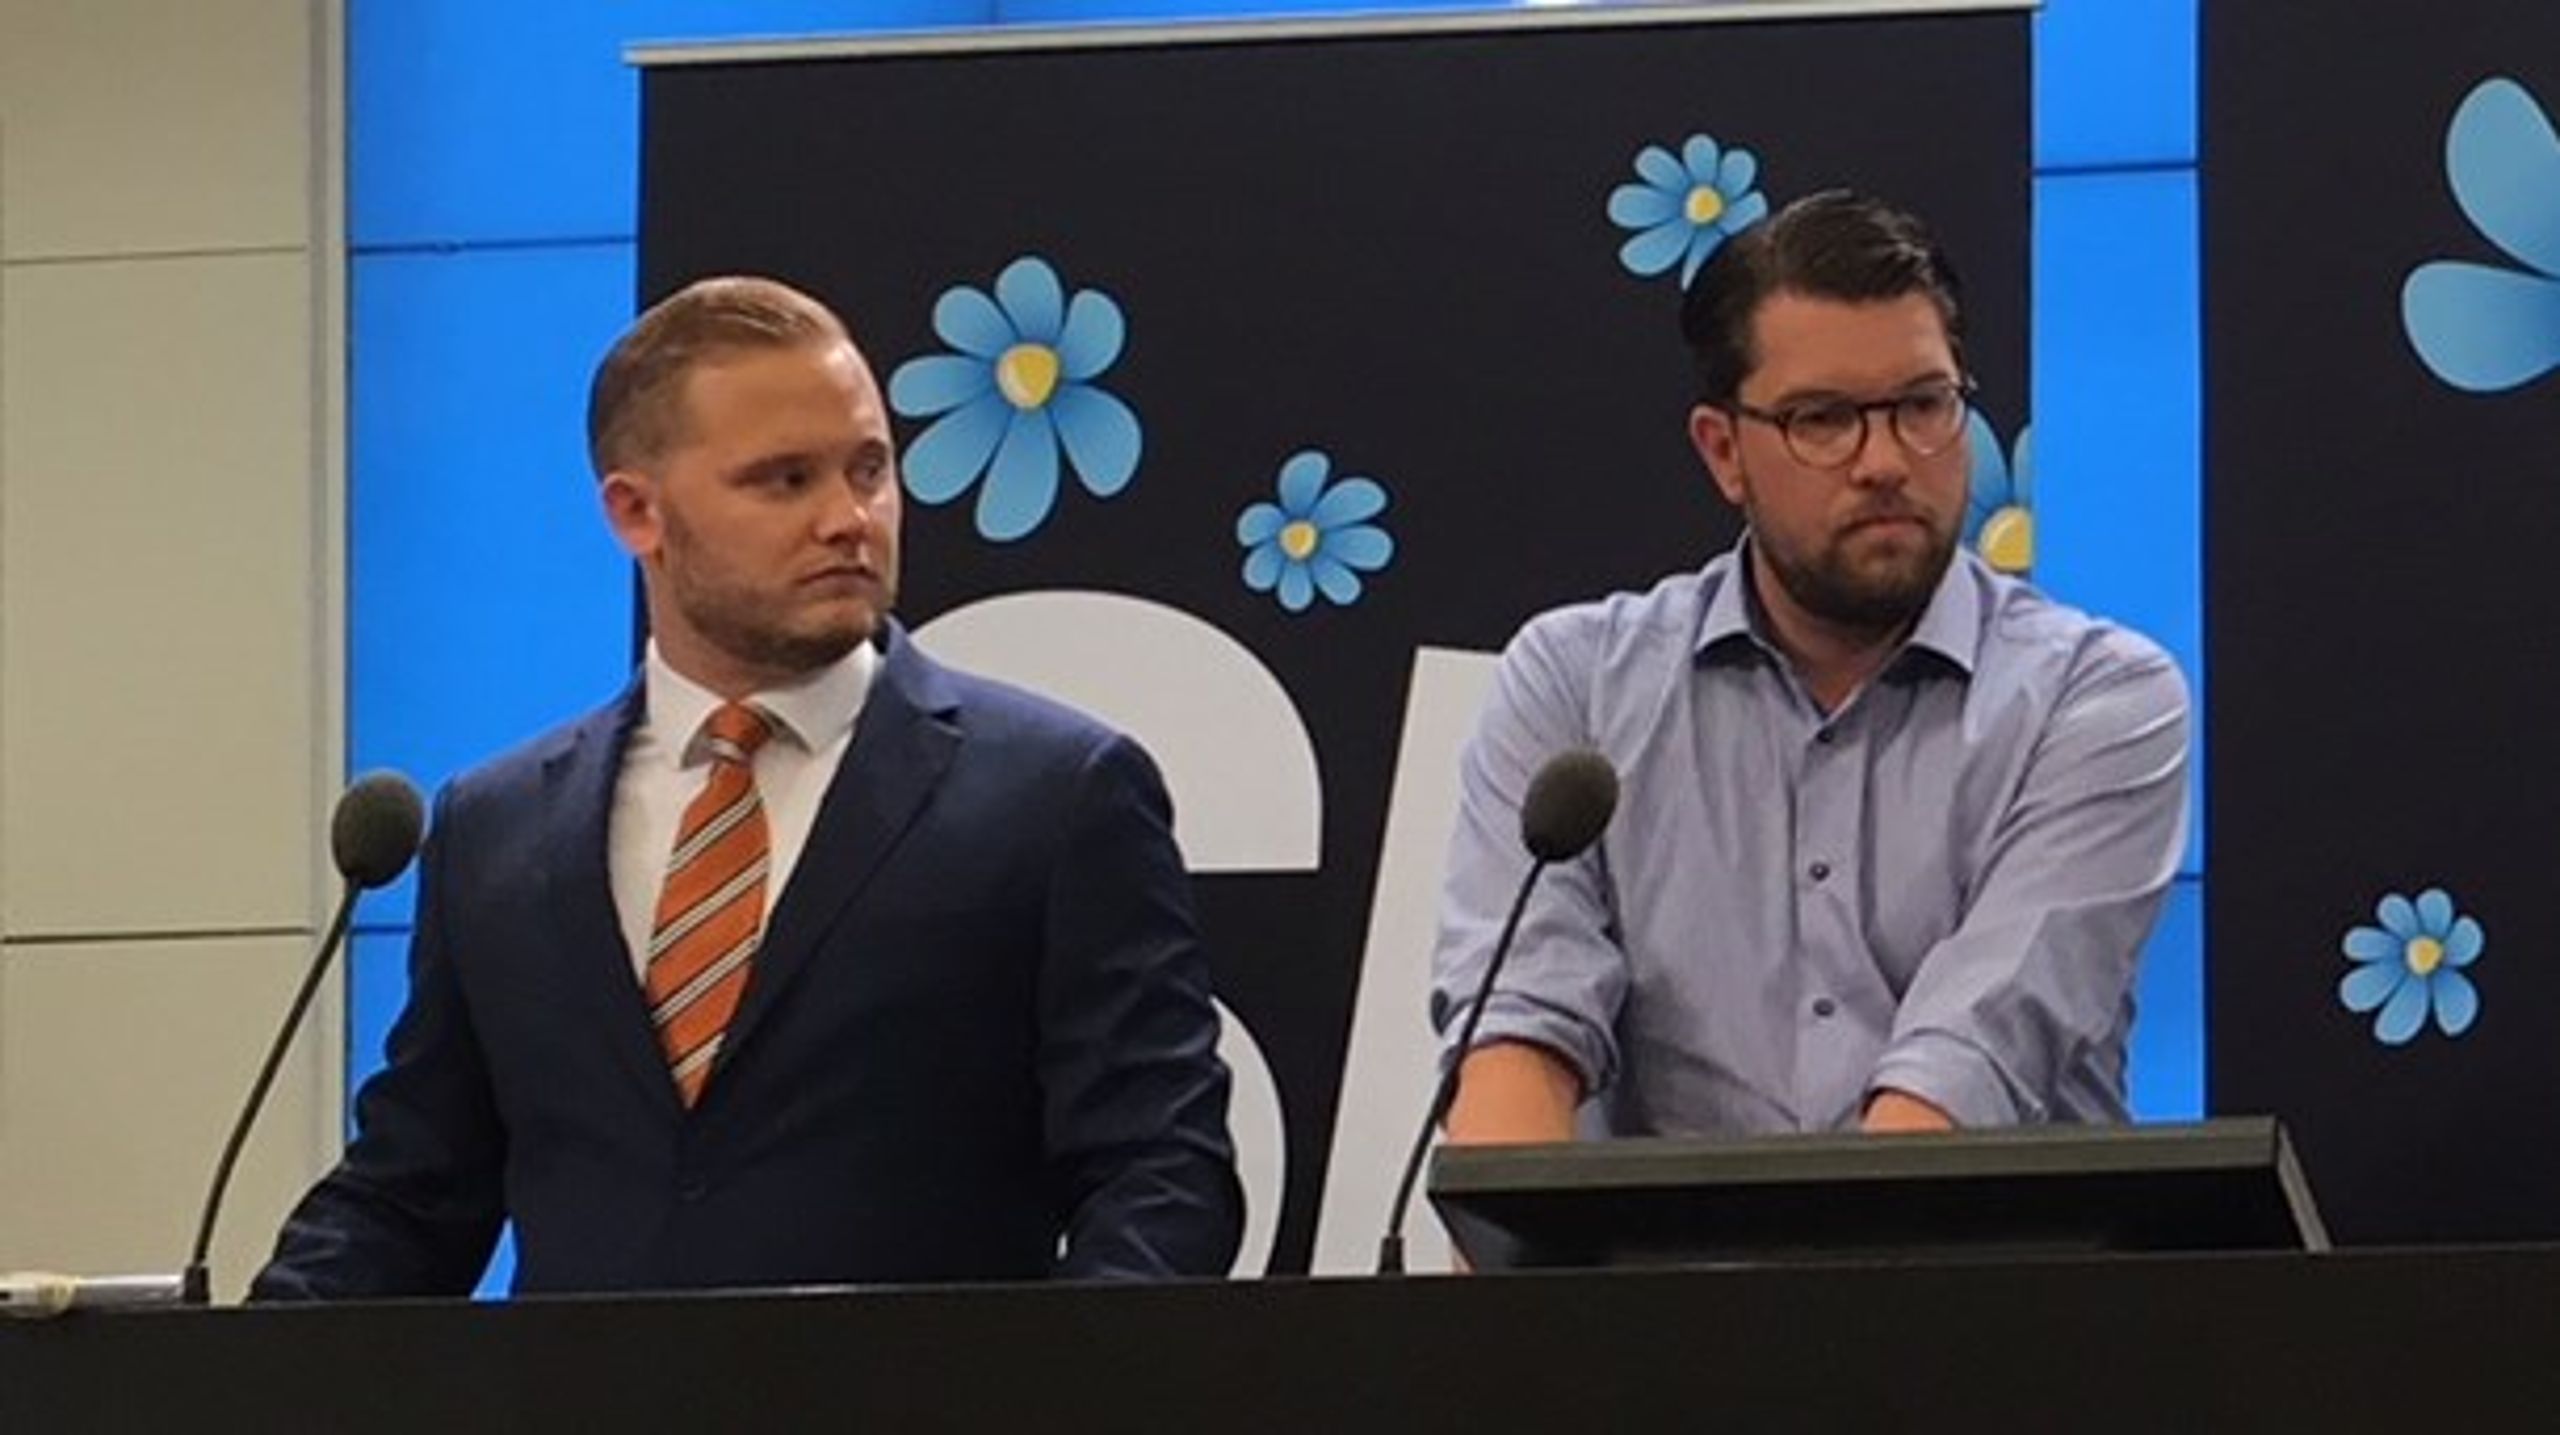 Henrik Vinge, integrationspolitisk talesperson, bredvid partiledaren Jimmie Åkesson för Sverigedemokraterna.&nbsp;